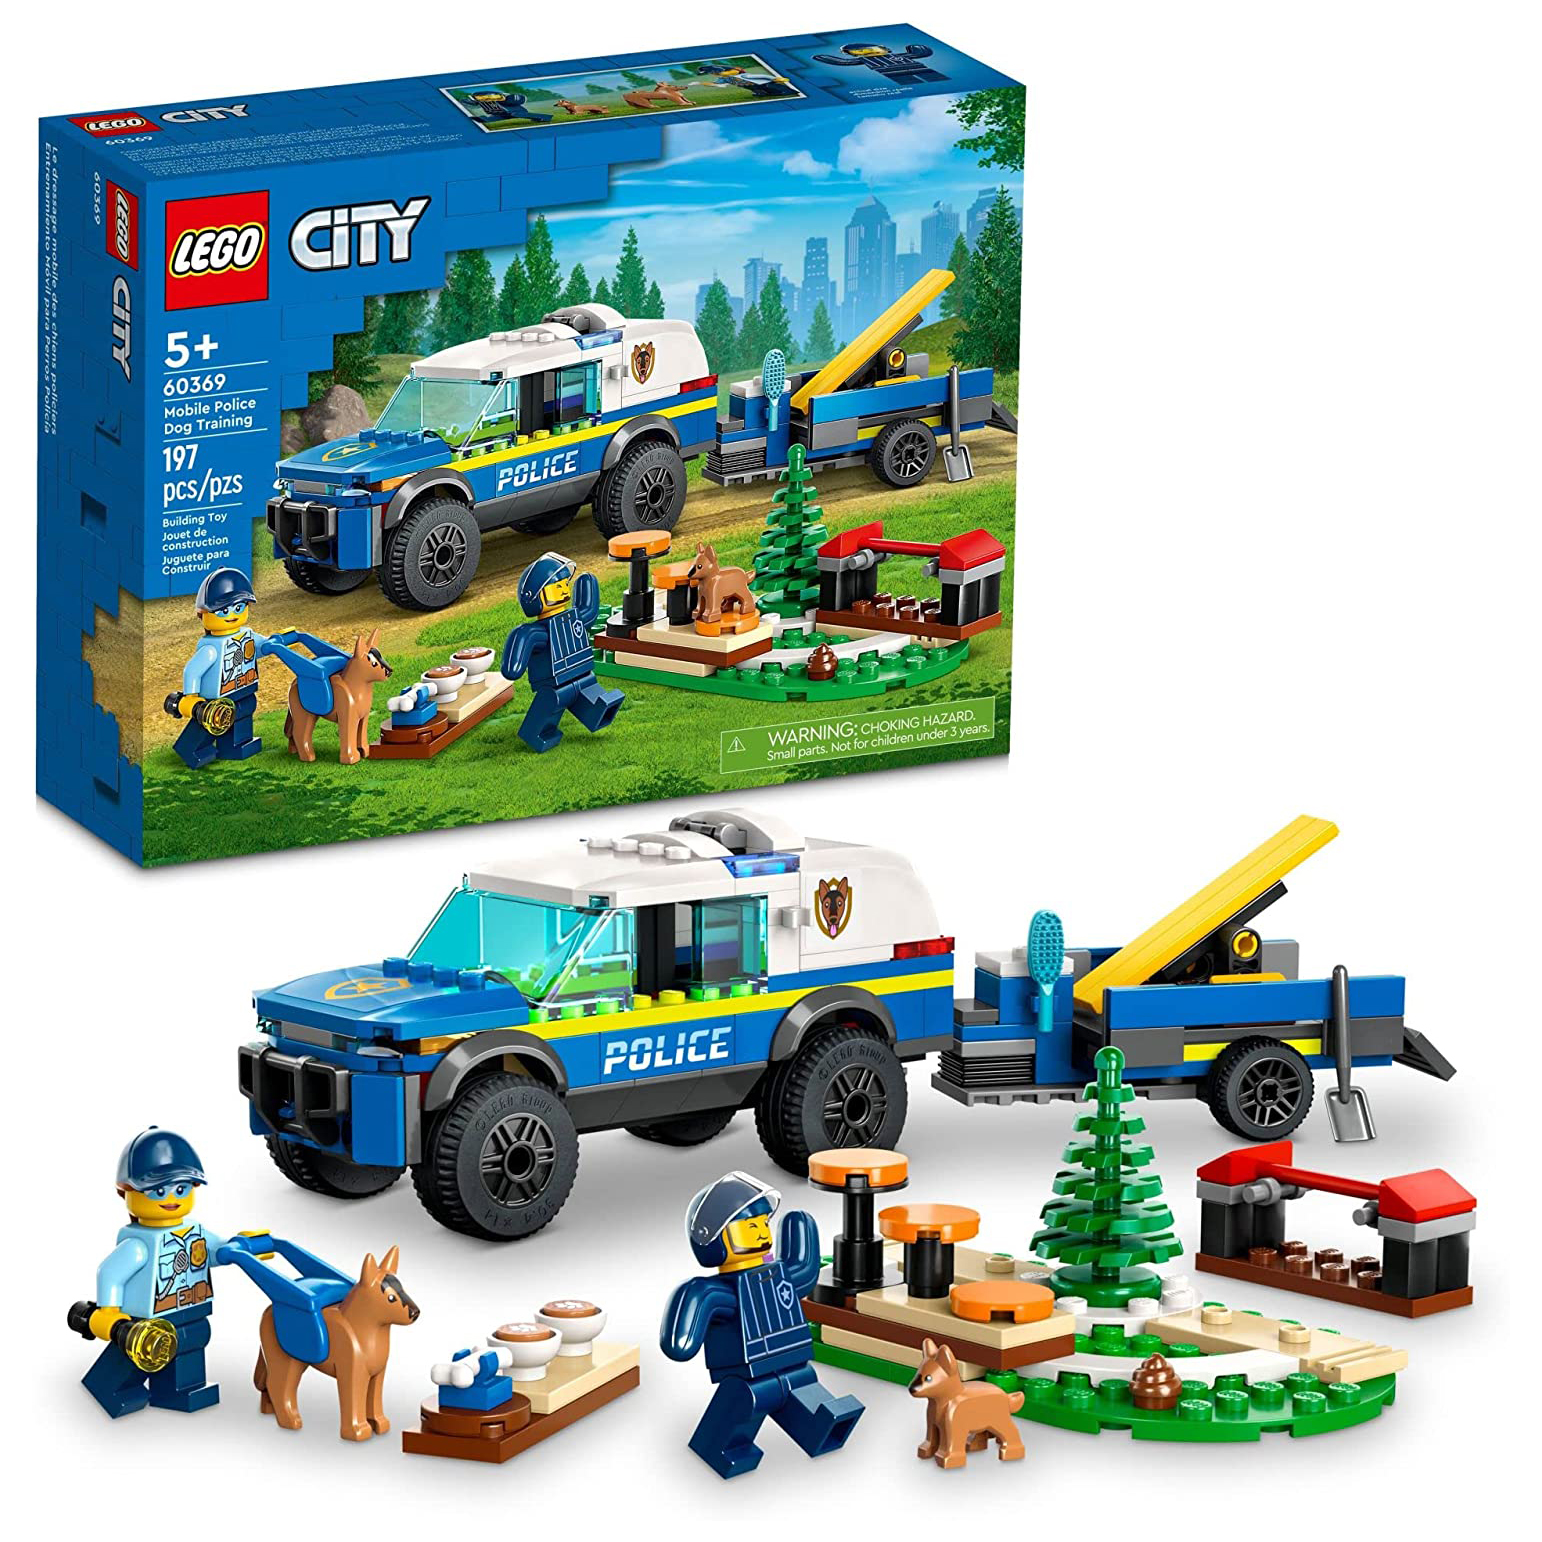 Конструктор LEGO City Дрессировка полицейской собаки на выезде, 197 деталей, 60369 полицейские наручники и значок lego